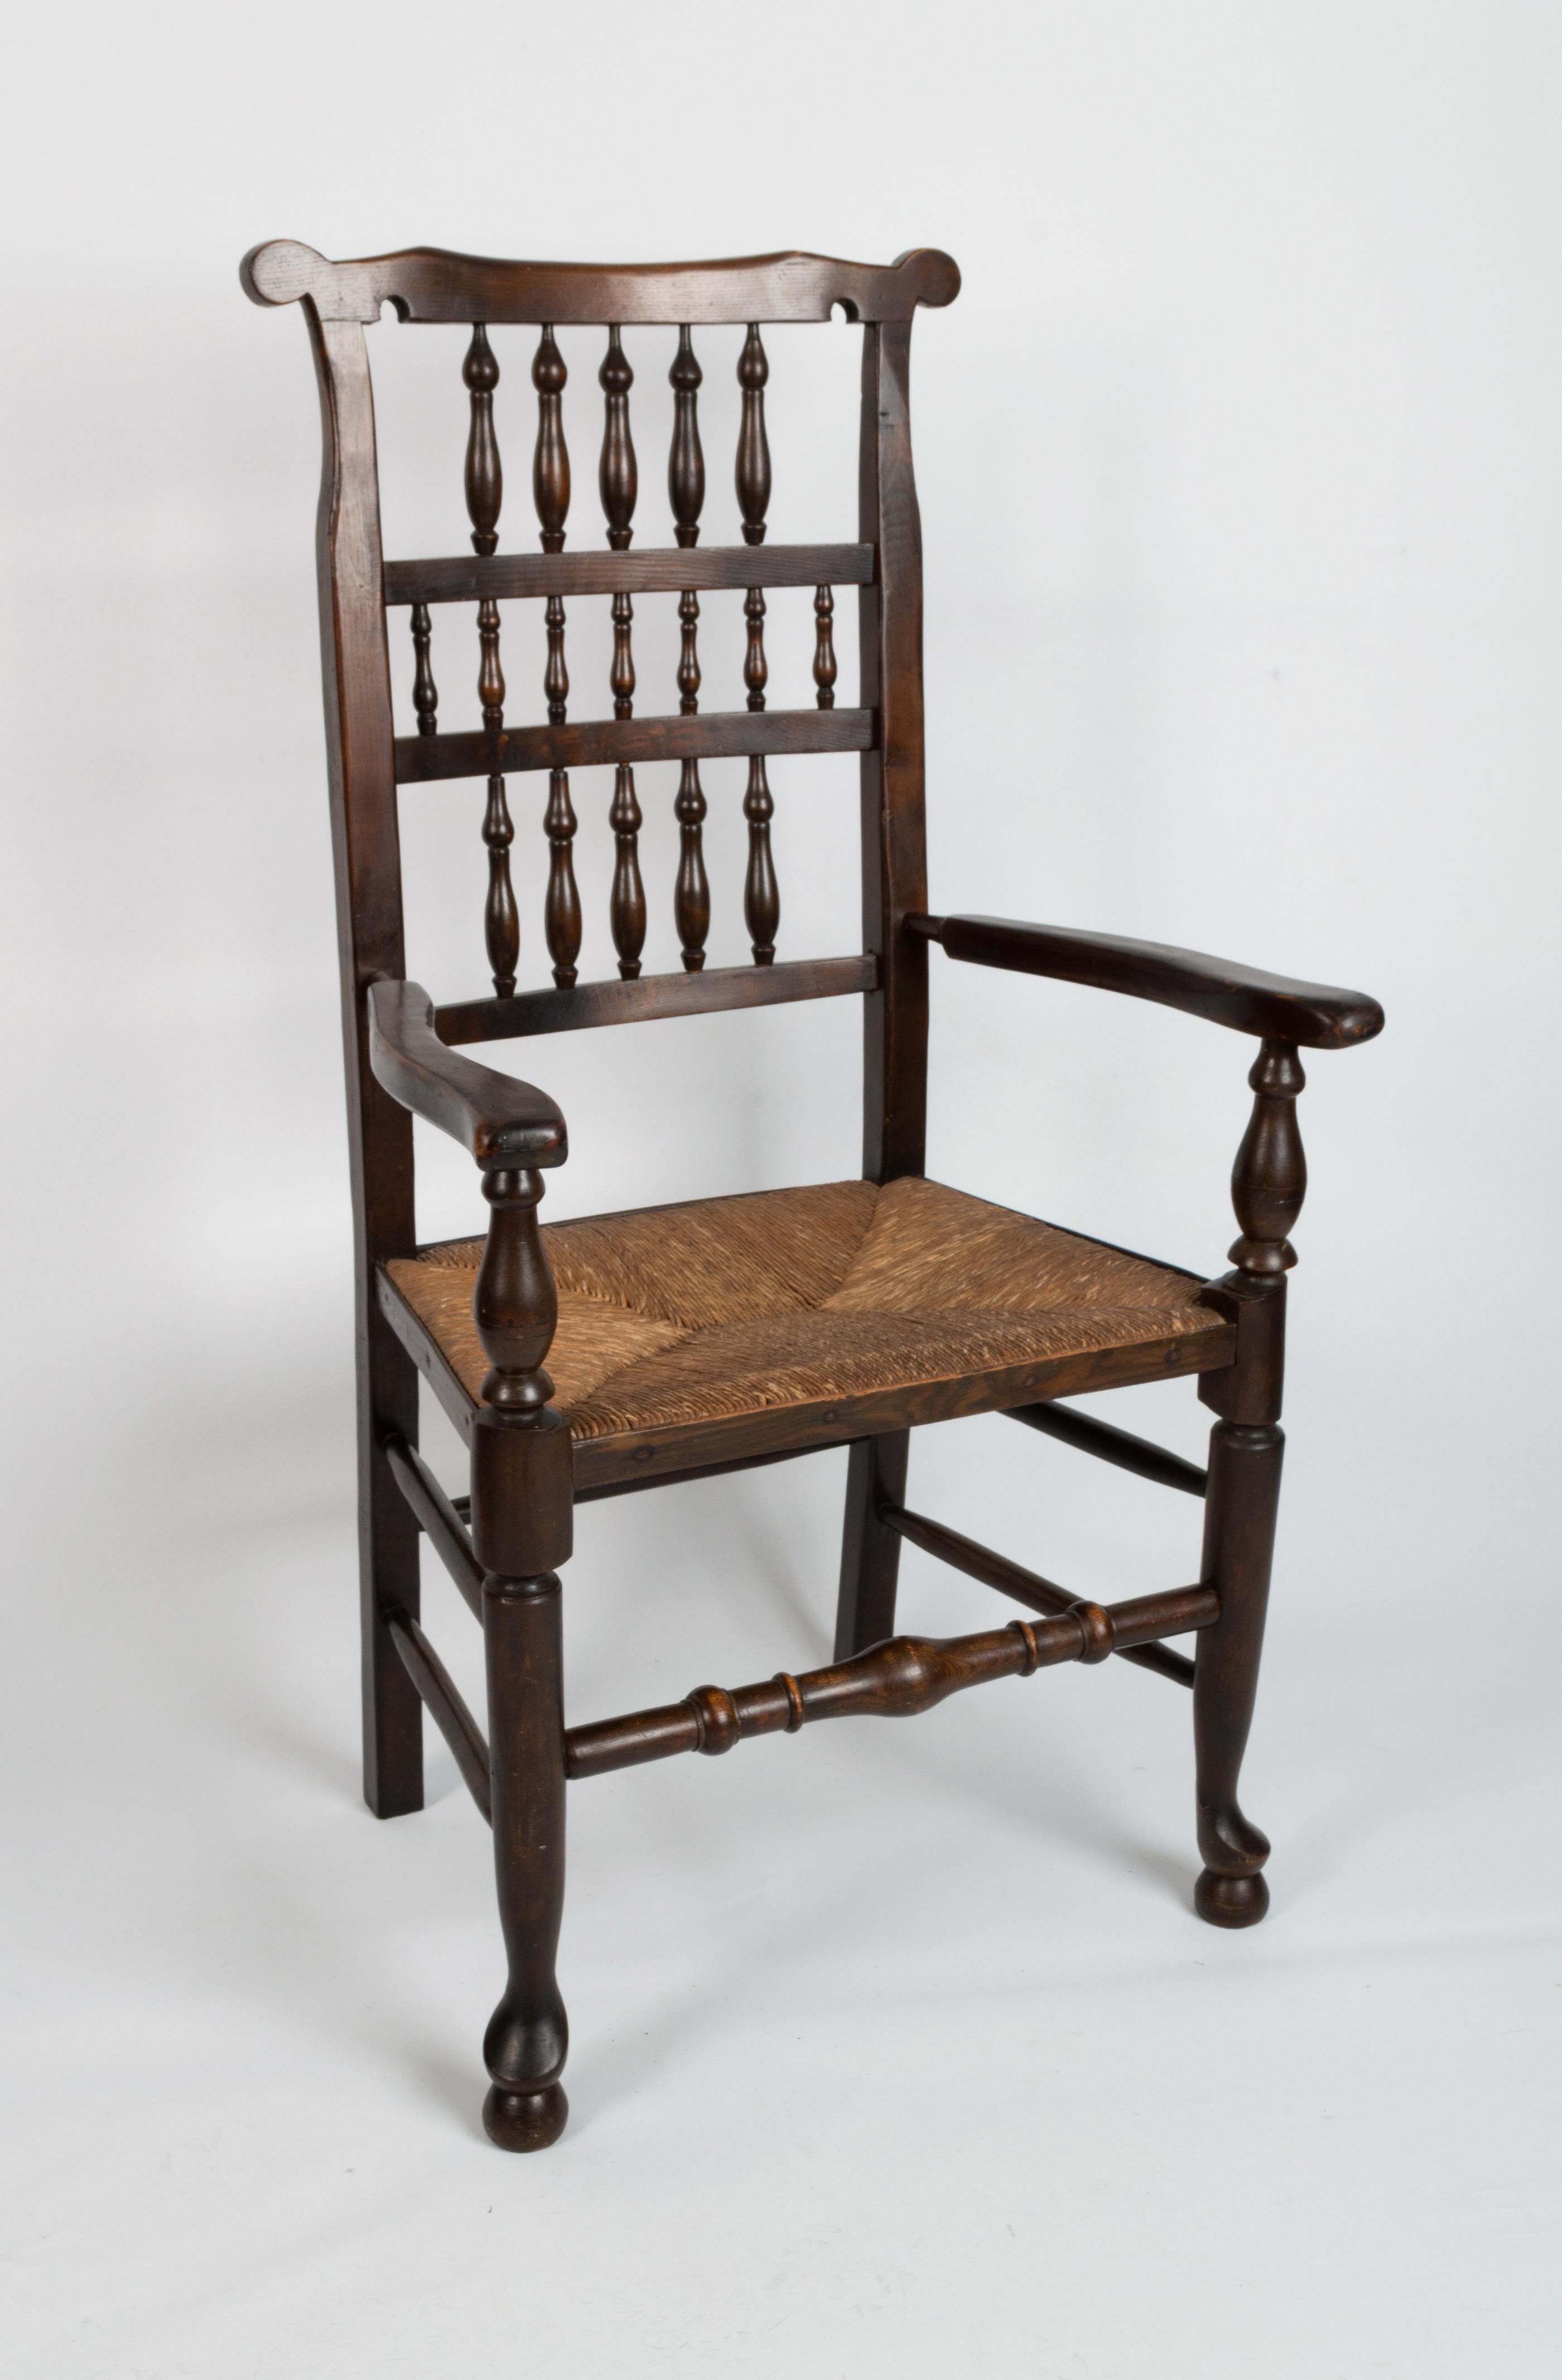 Antique chaise coudée anglaise Arts & Crafts en jonc de chêne C.1840

Chaise de salon du 19ème siècle à dossier fuseau.
Angleterre, C.1840
Chêne tourné, dossier à 17 broches et assise en jonc.

Excellent état de solidité et de robustesse